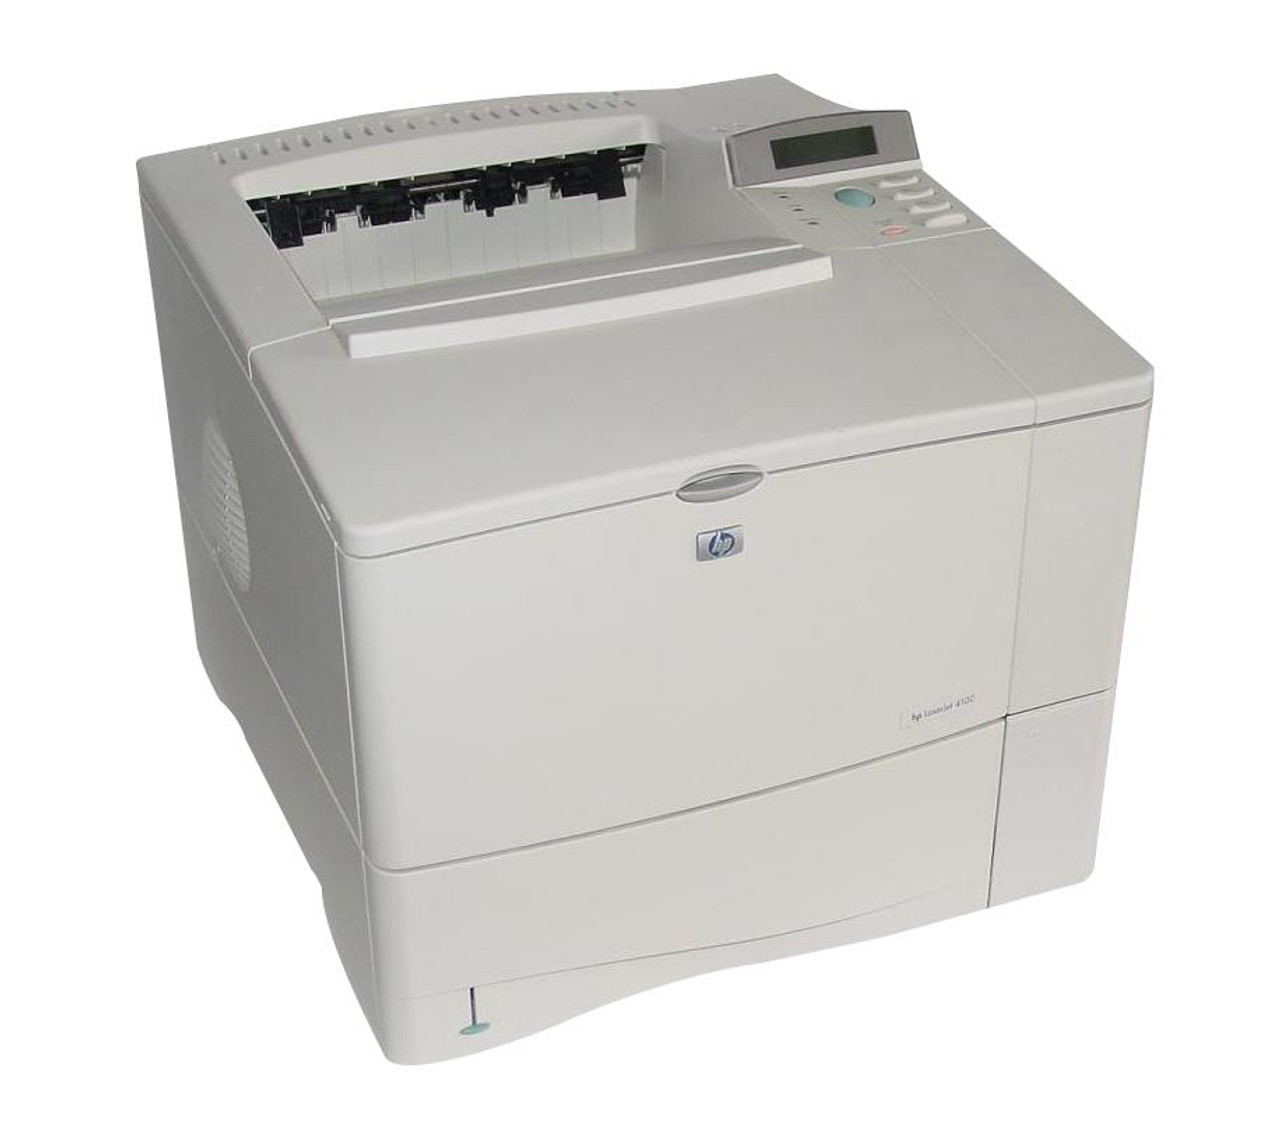 LaserJet 4100 Multifunction Printer series